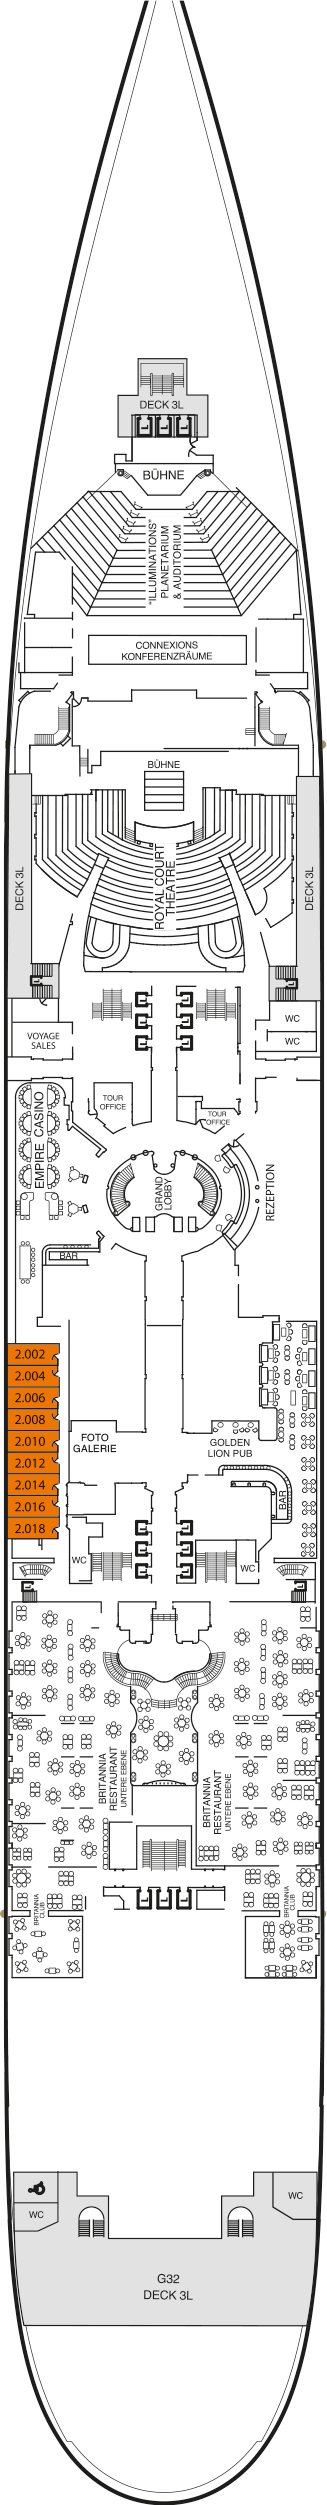 Queen Mary 2 - Decksplan Deck 2